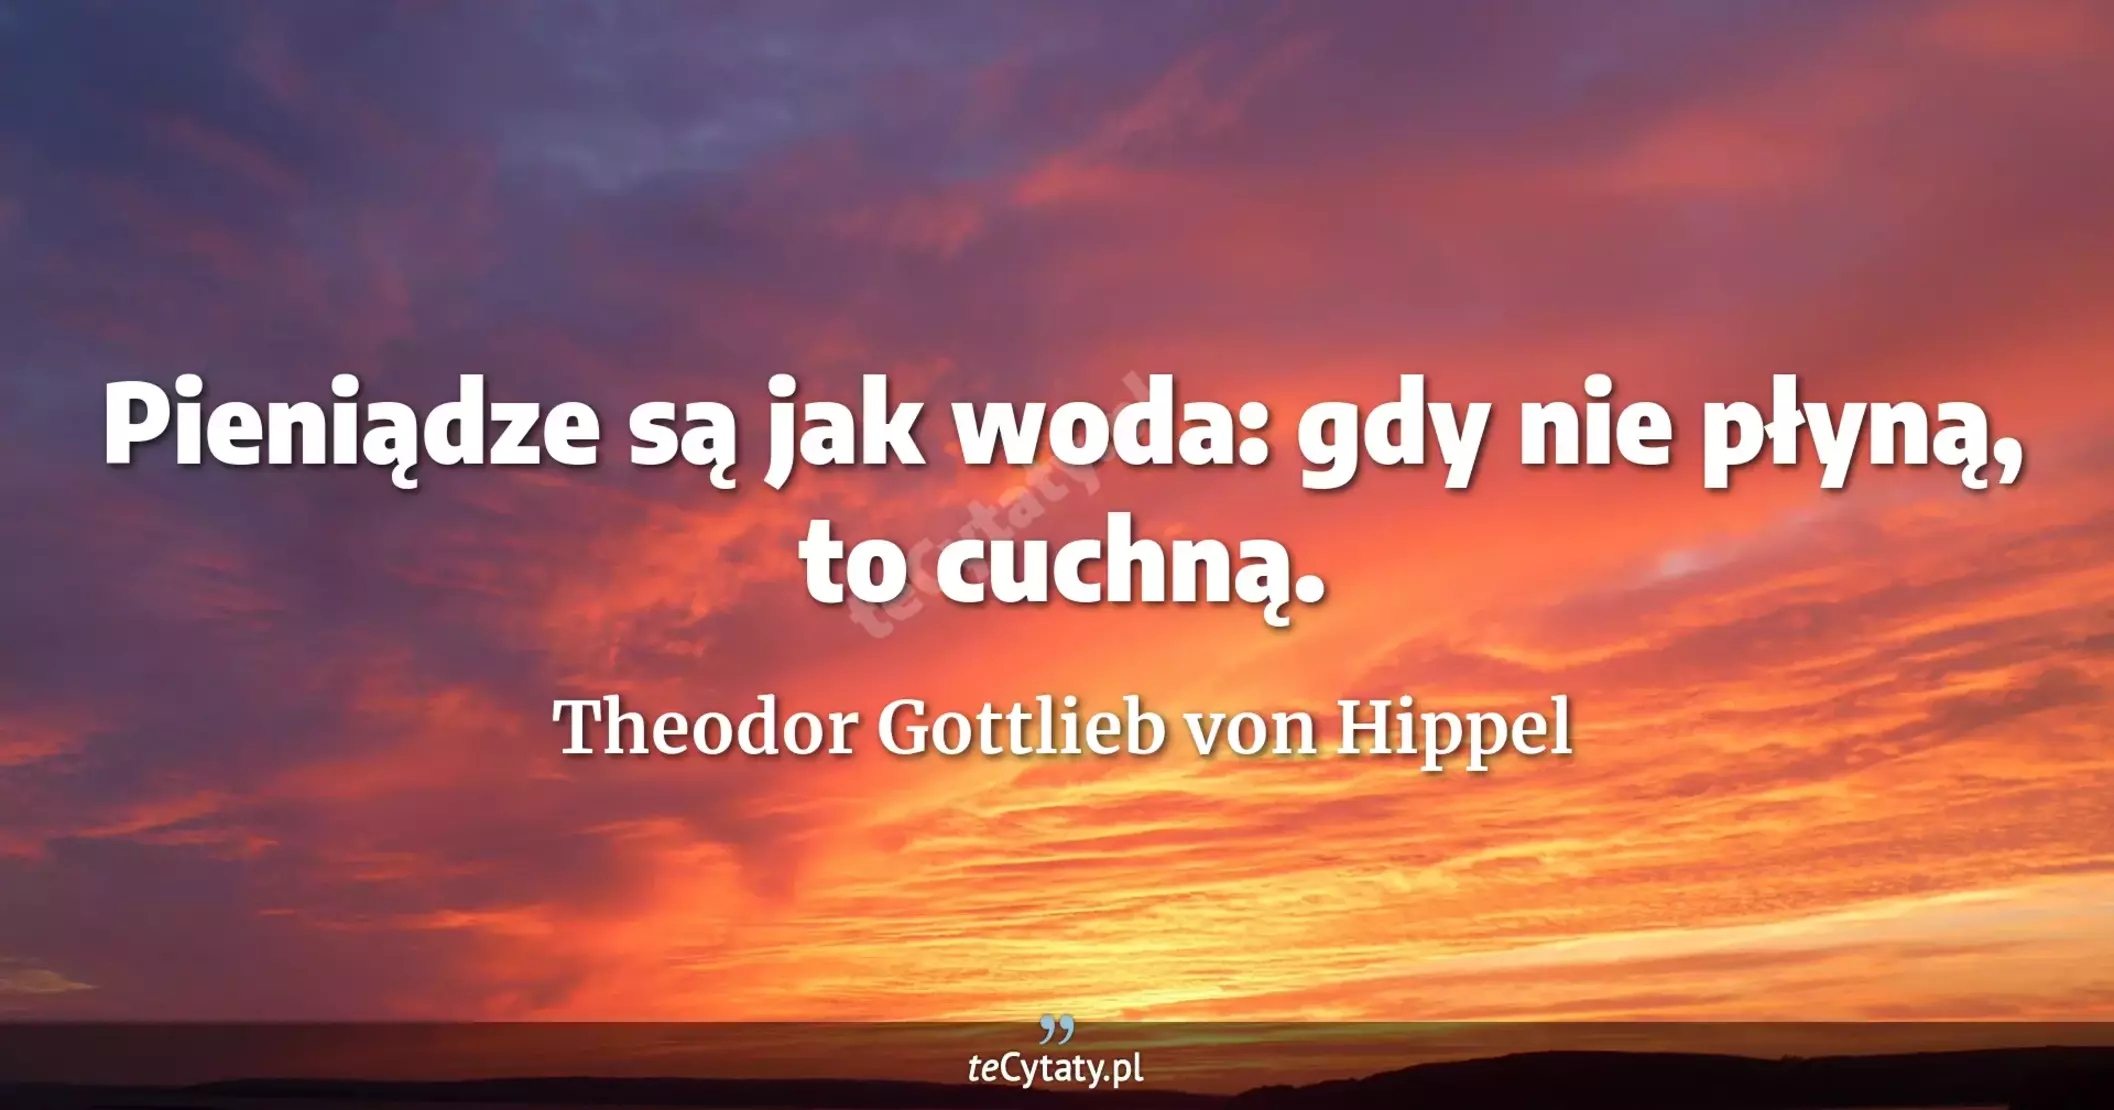 Pieniądze są jak woda: gdy nie płyną, to cuchną. - Theodor Gottlieb von Hippel